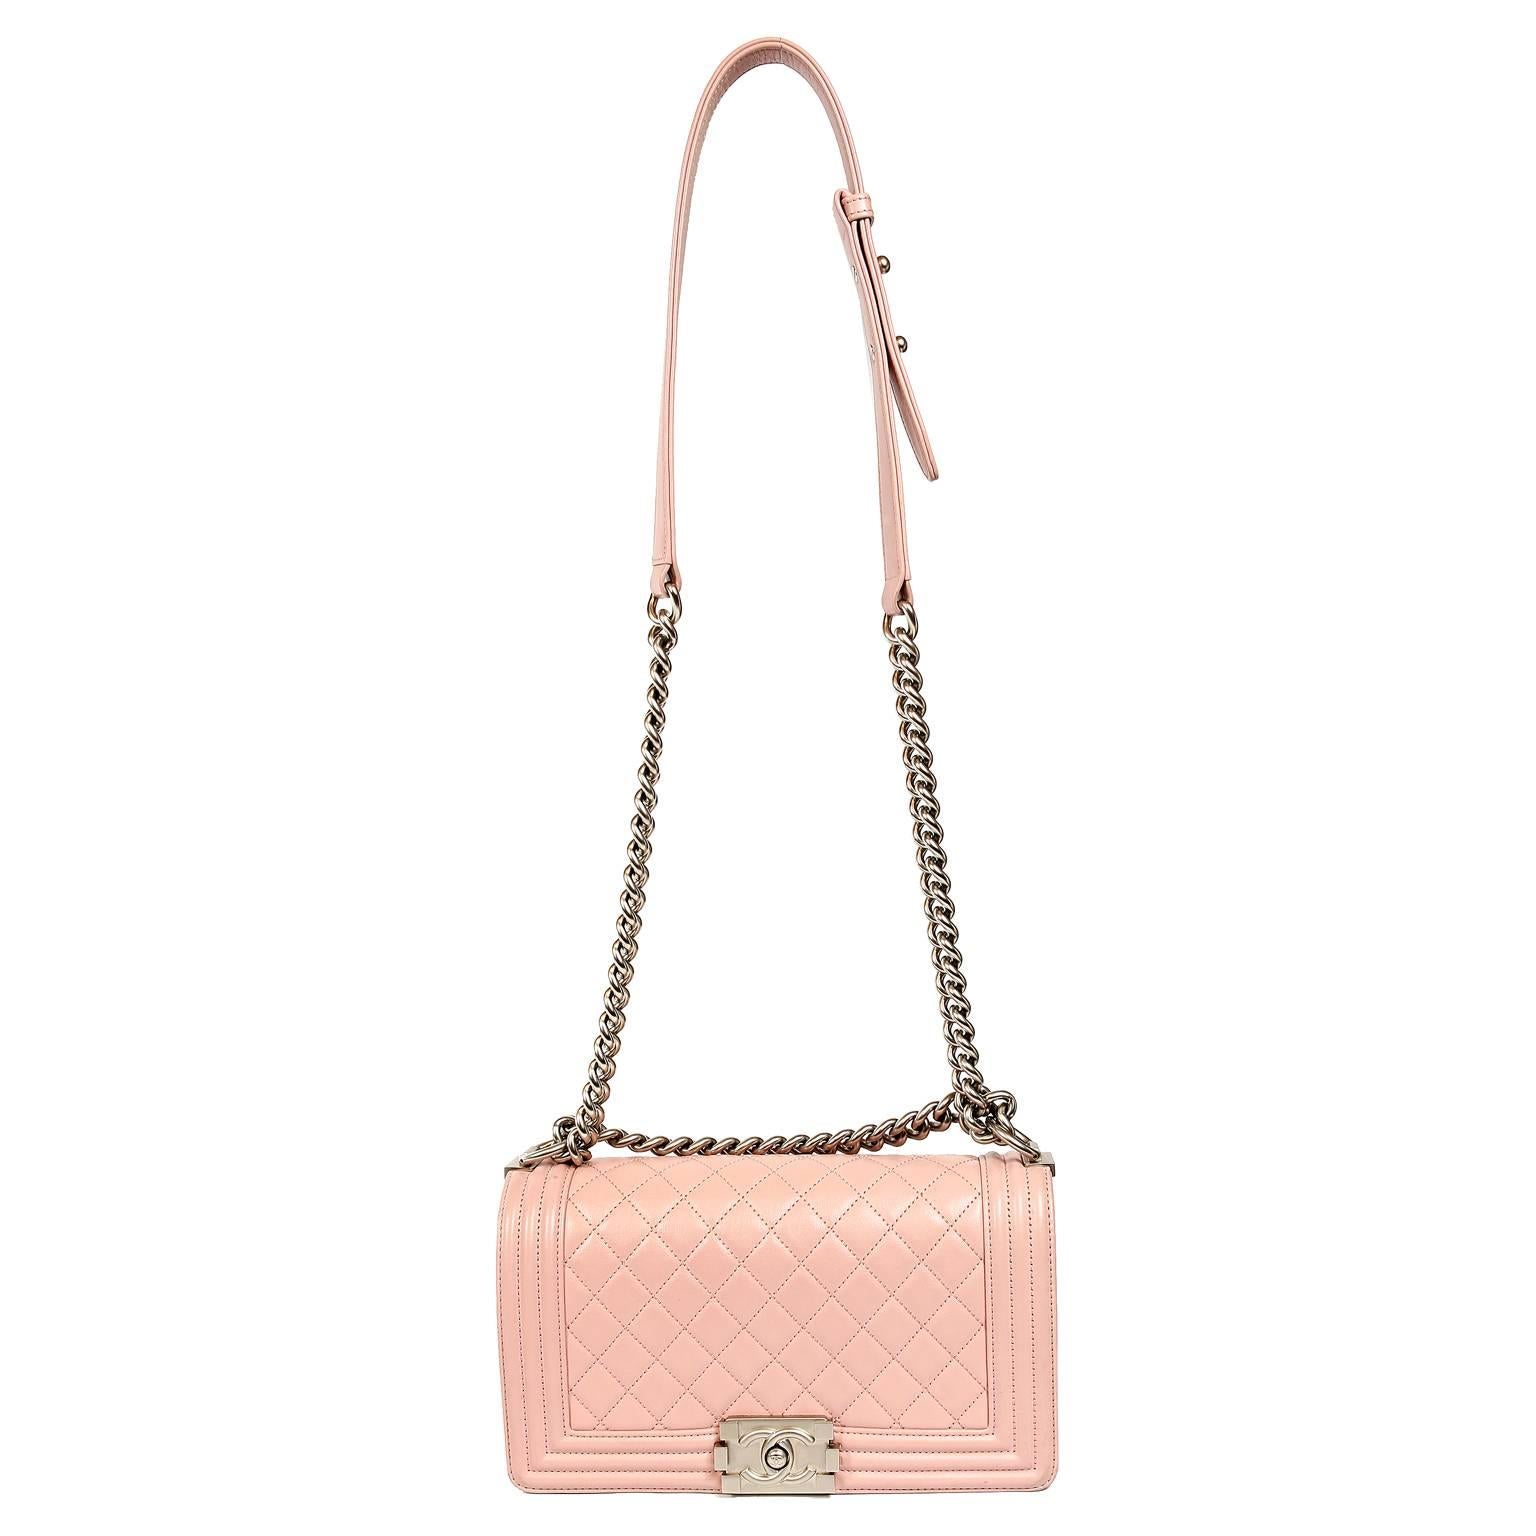 Chanel Blush Pink Leather Medium Boy Bag 5